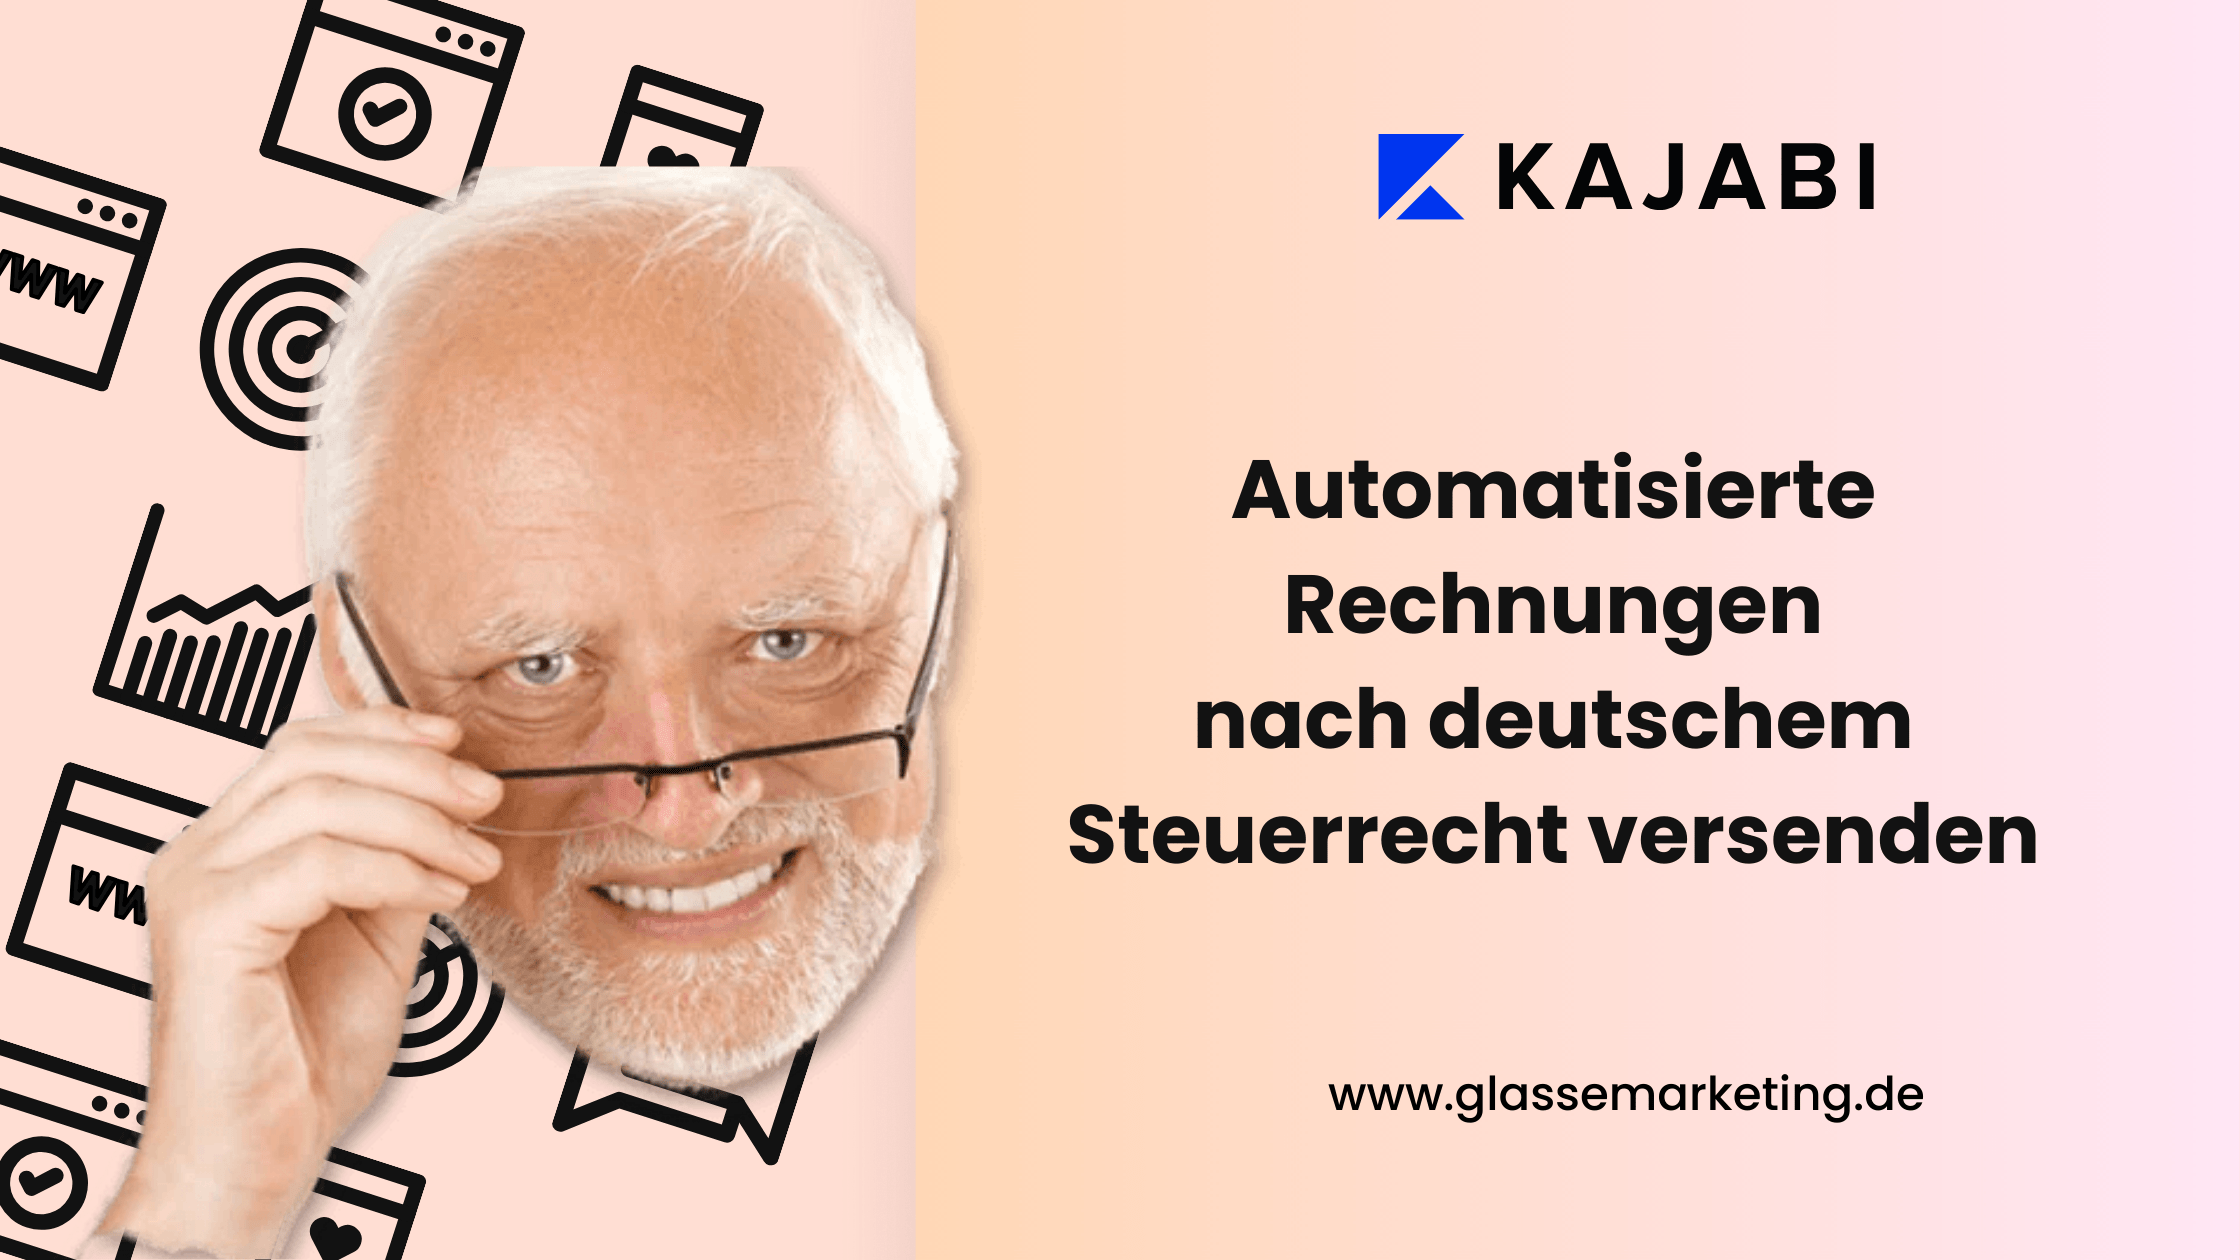 Kajabi: automatisierte Rechnungen nach deutschem Steuerrecht versenden